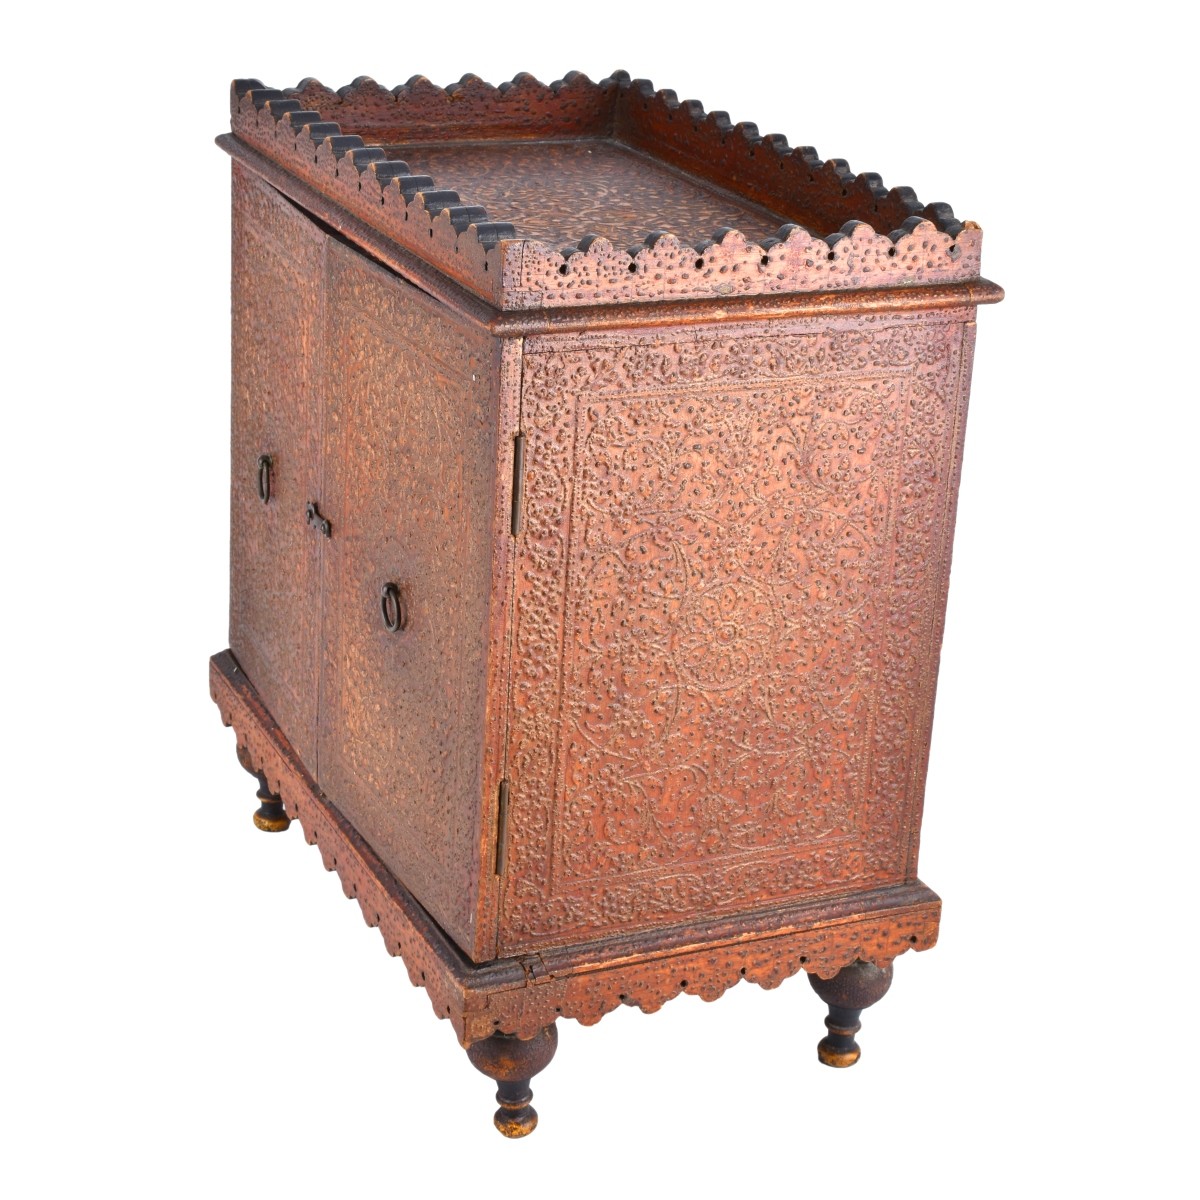 Antique Persian Cabinet